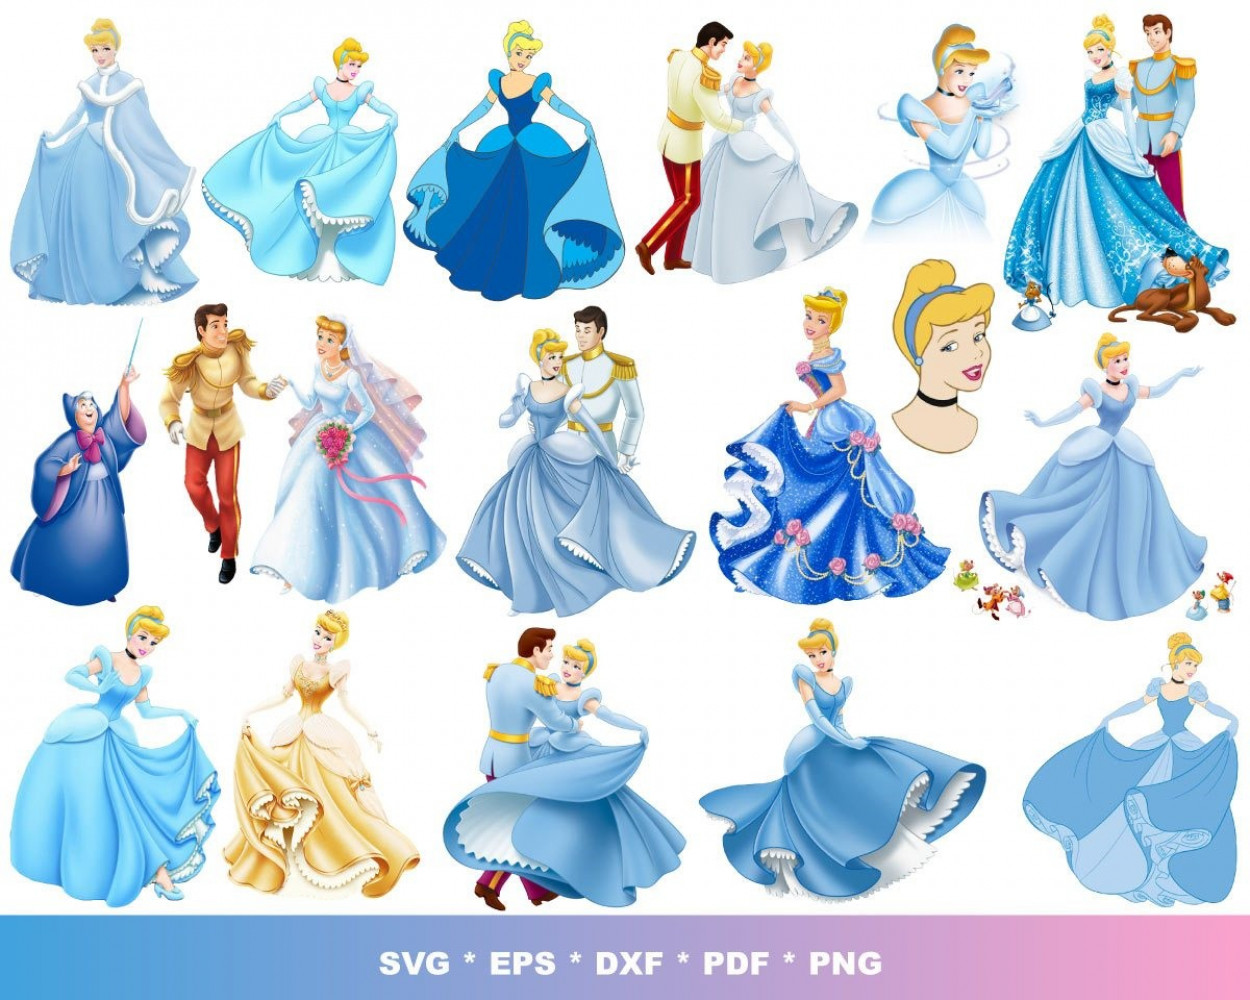 Cinderella SVG 100+ Bundle, Cinderella Cricut, Cinderella Clipart